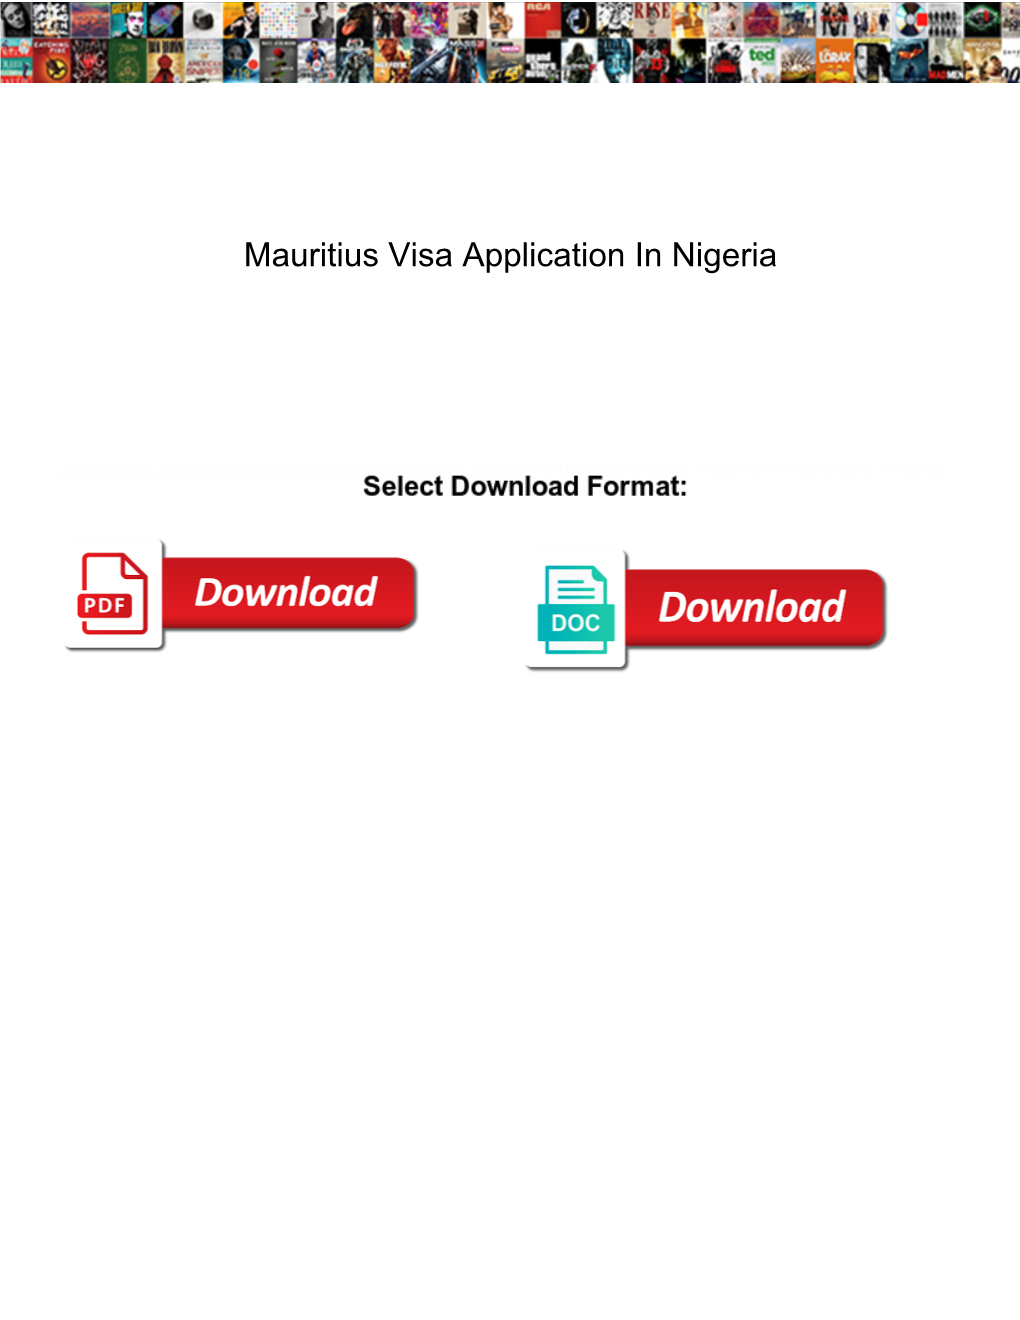 Mauritius Visa Application in Nigeria